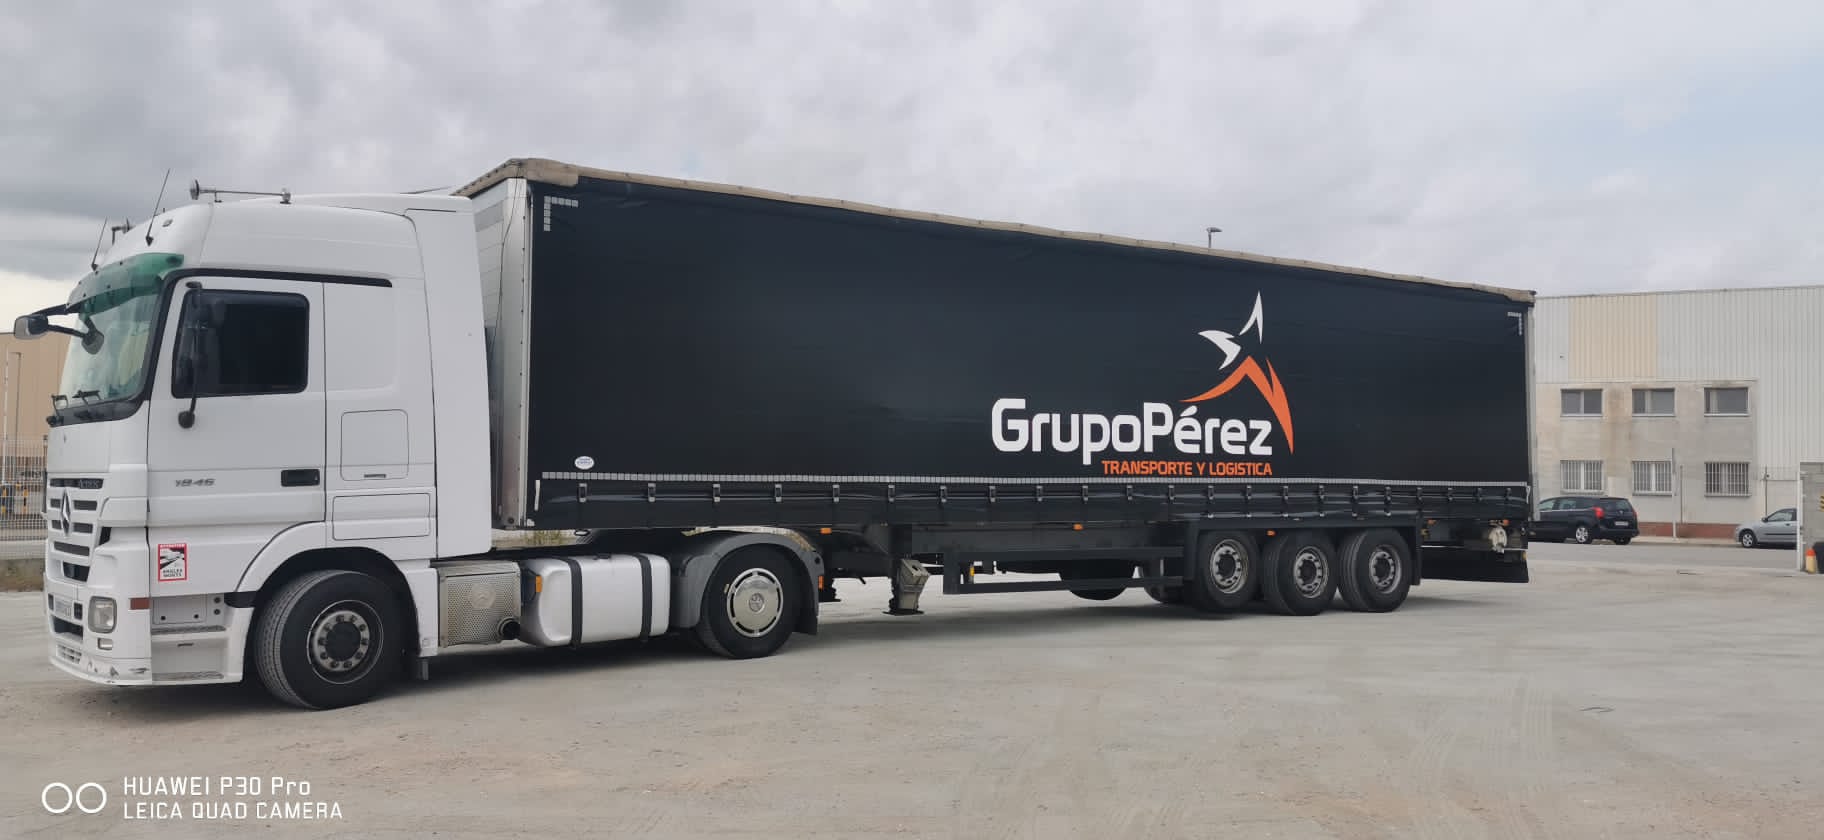 Images Transportes Grupo Pérez